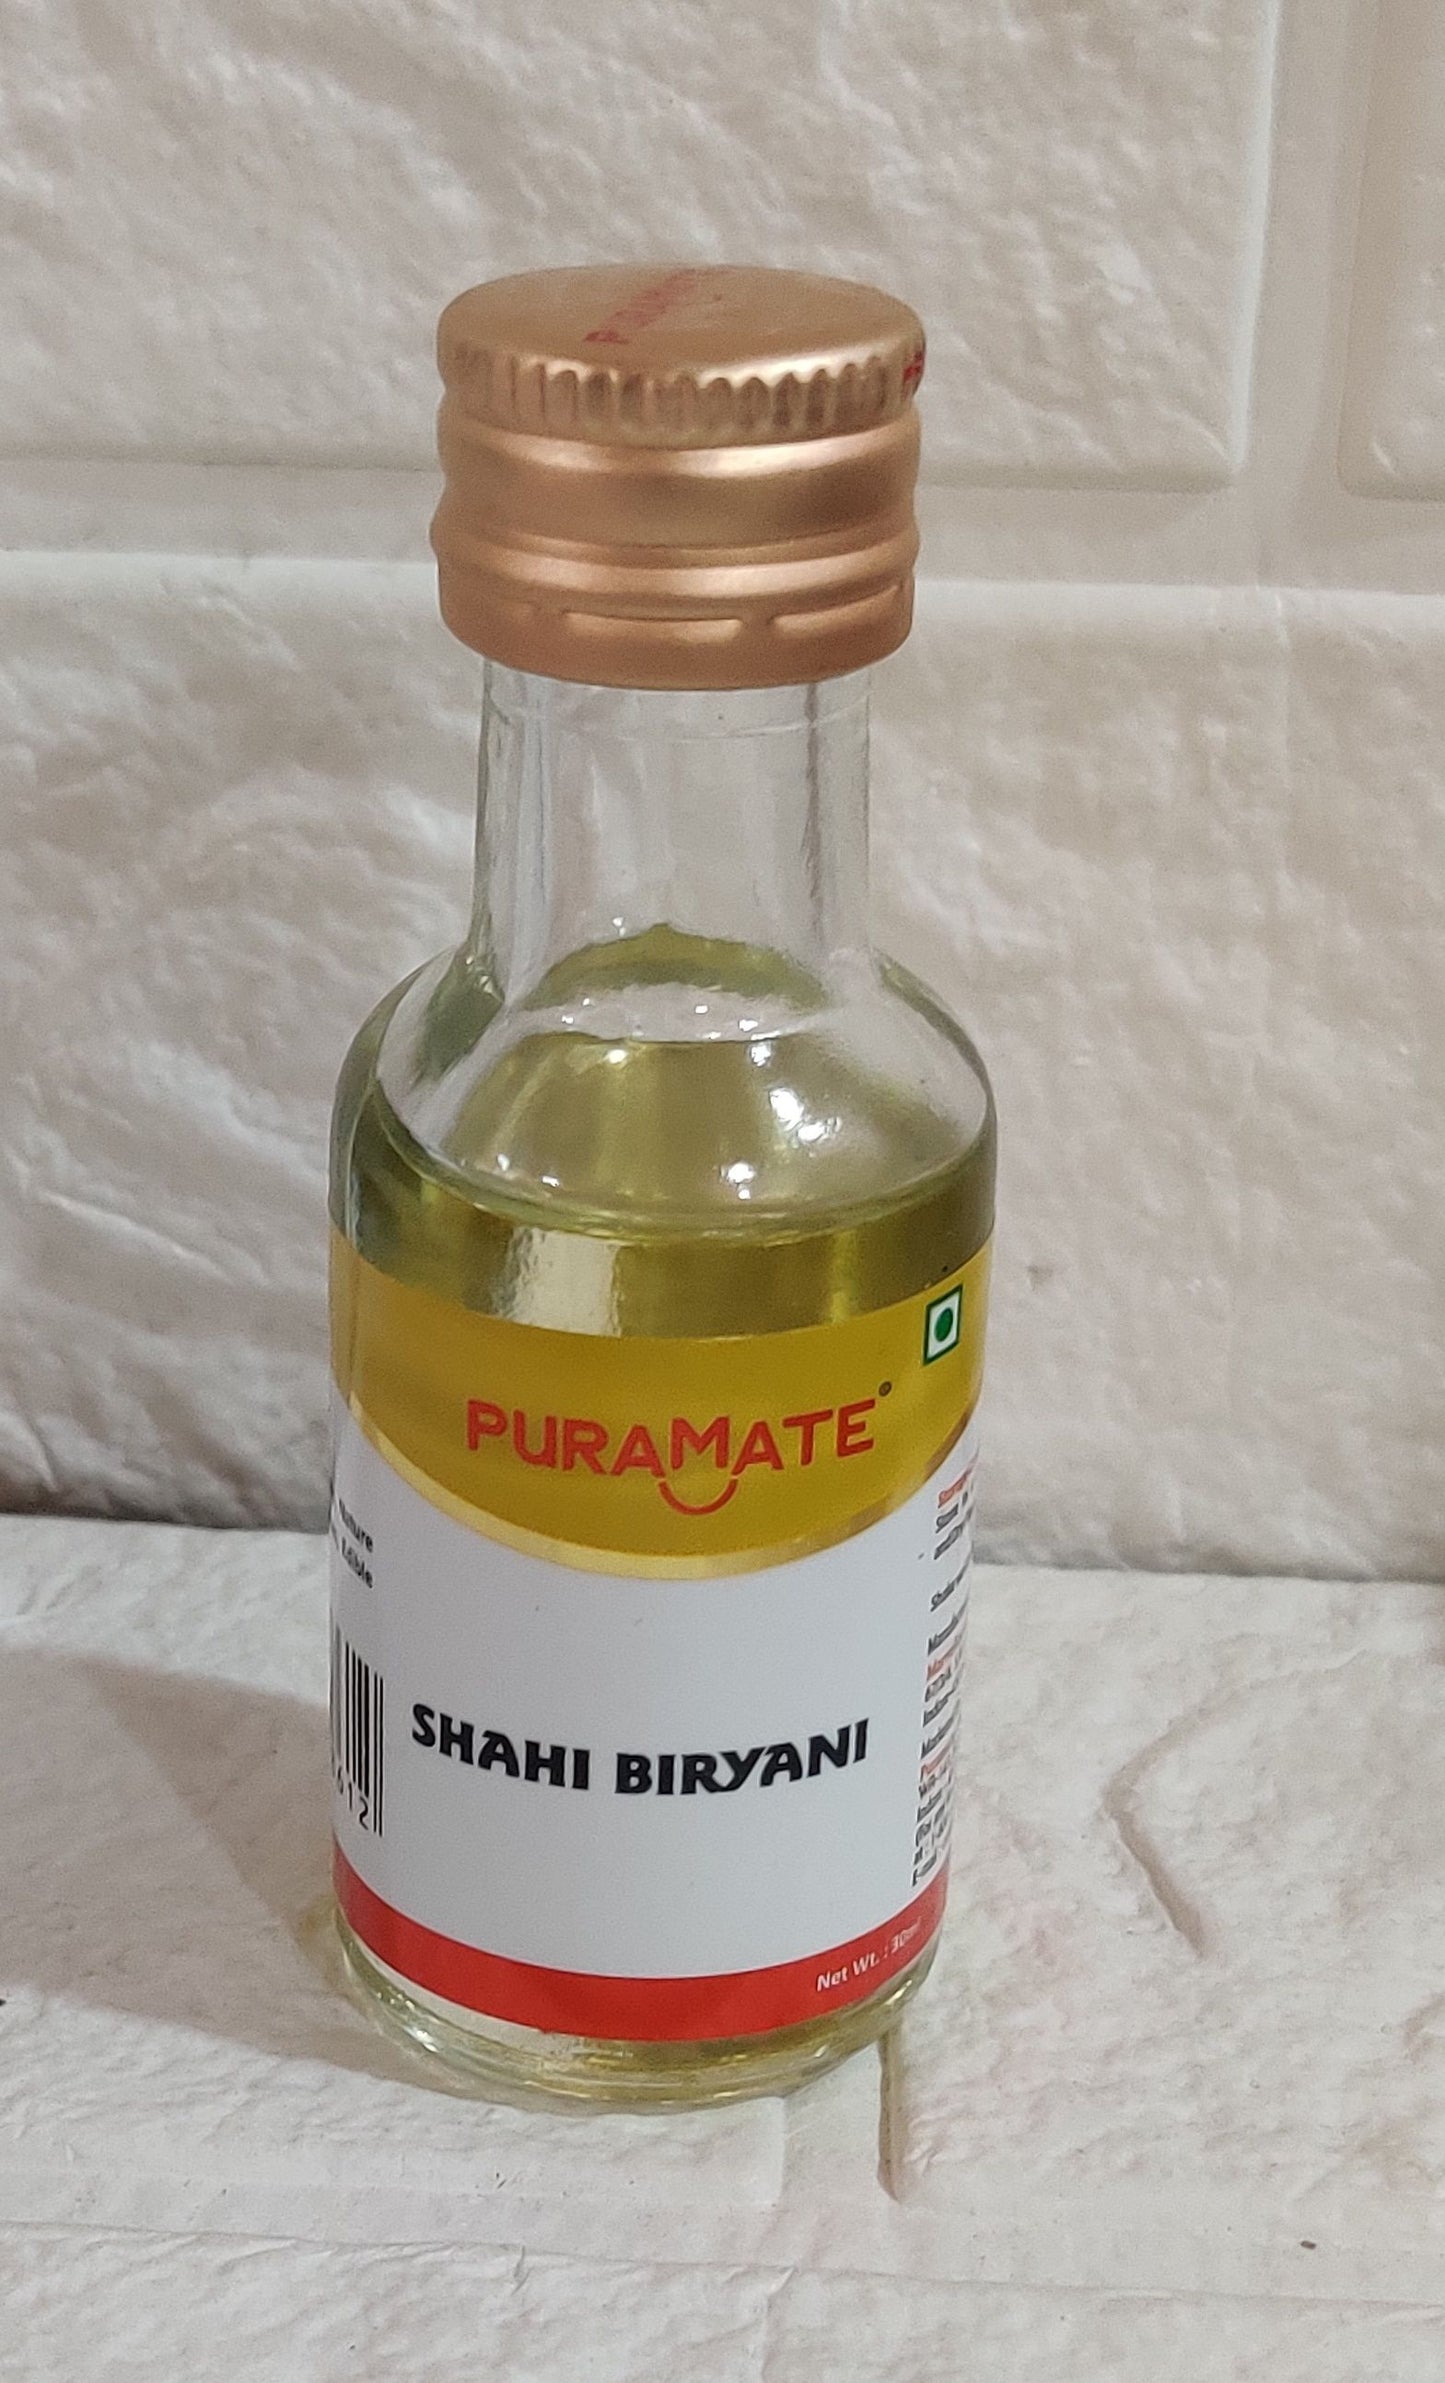 Puramate Shahi Biryani essence

30ml